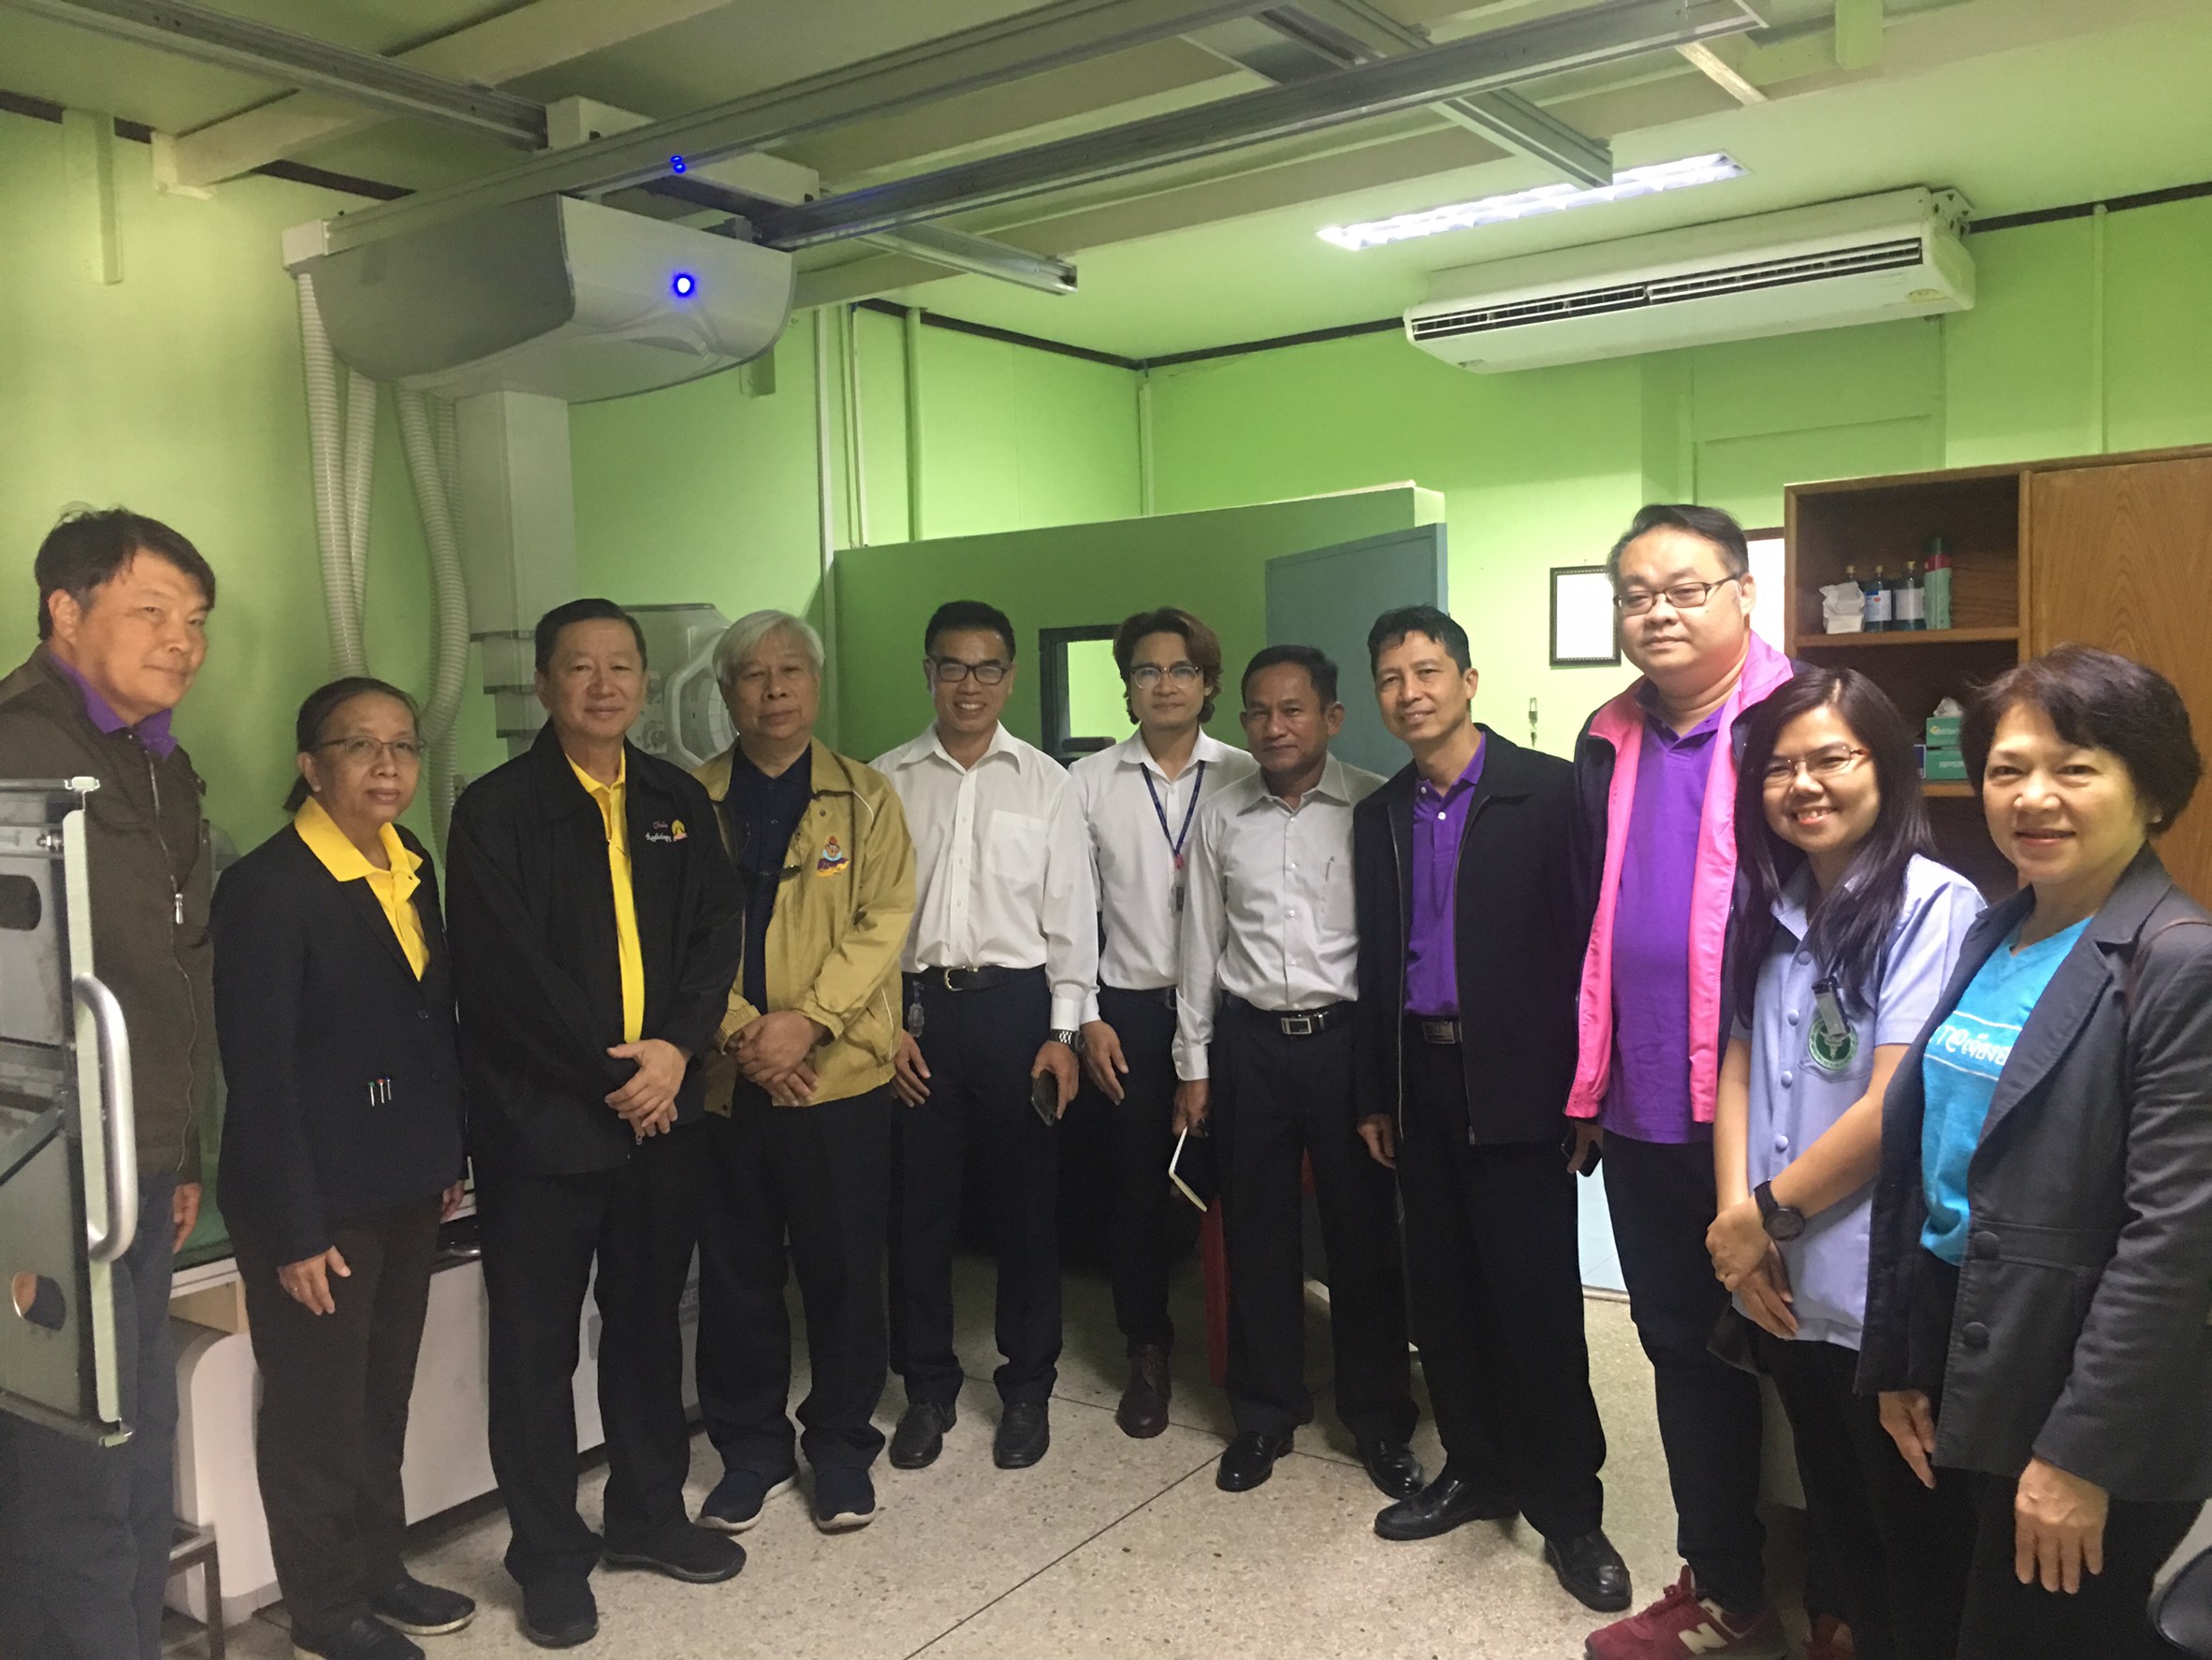 ประชุมวิชาการร่วมกับรังสีการแพทย์แห่งประเทศไทย ครั้งที่17 27-29 พ.ย. - พร้อมเข้าเยี่ยมและให้กำลังใจหน่วยงานรังสีวิทยาในพื้นที่จังหวัดอุบลราชธานีระหว่างวันที่ 25-26 พฤศจิกายน 2562 90